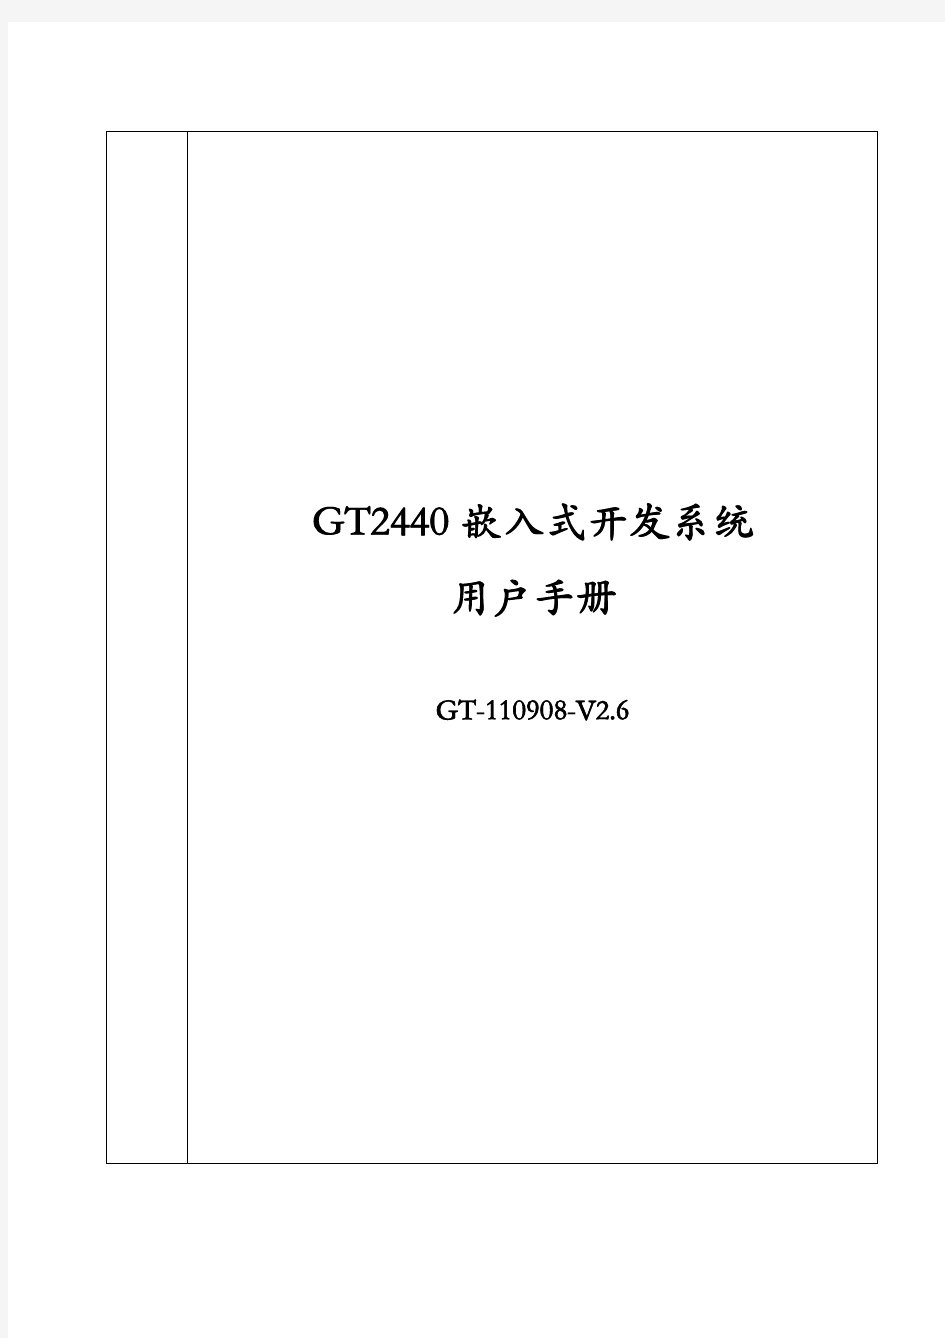 GT2440用户手册(V2.6)